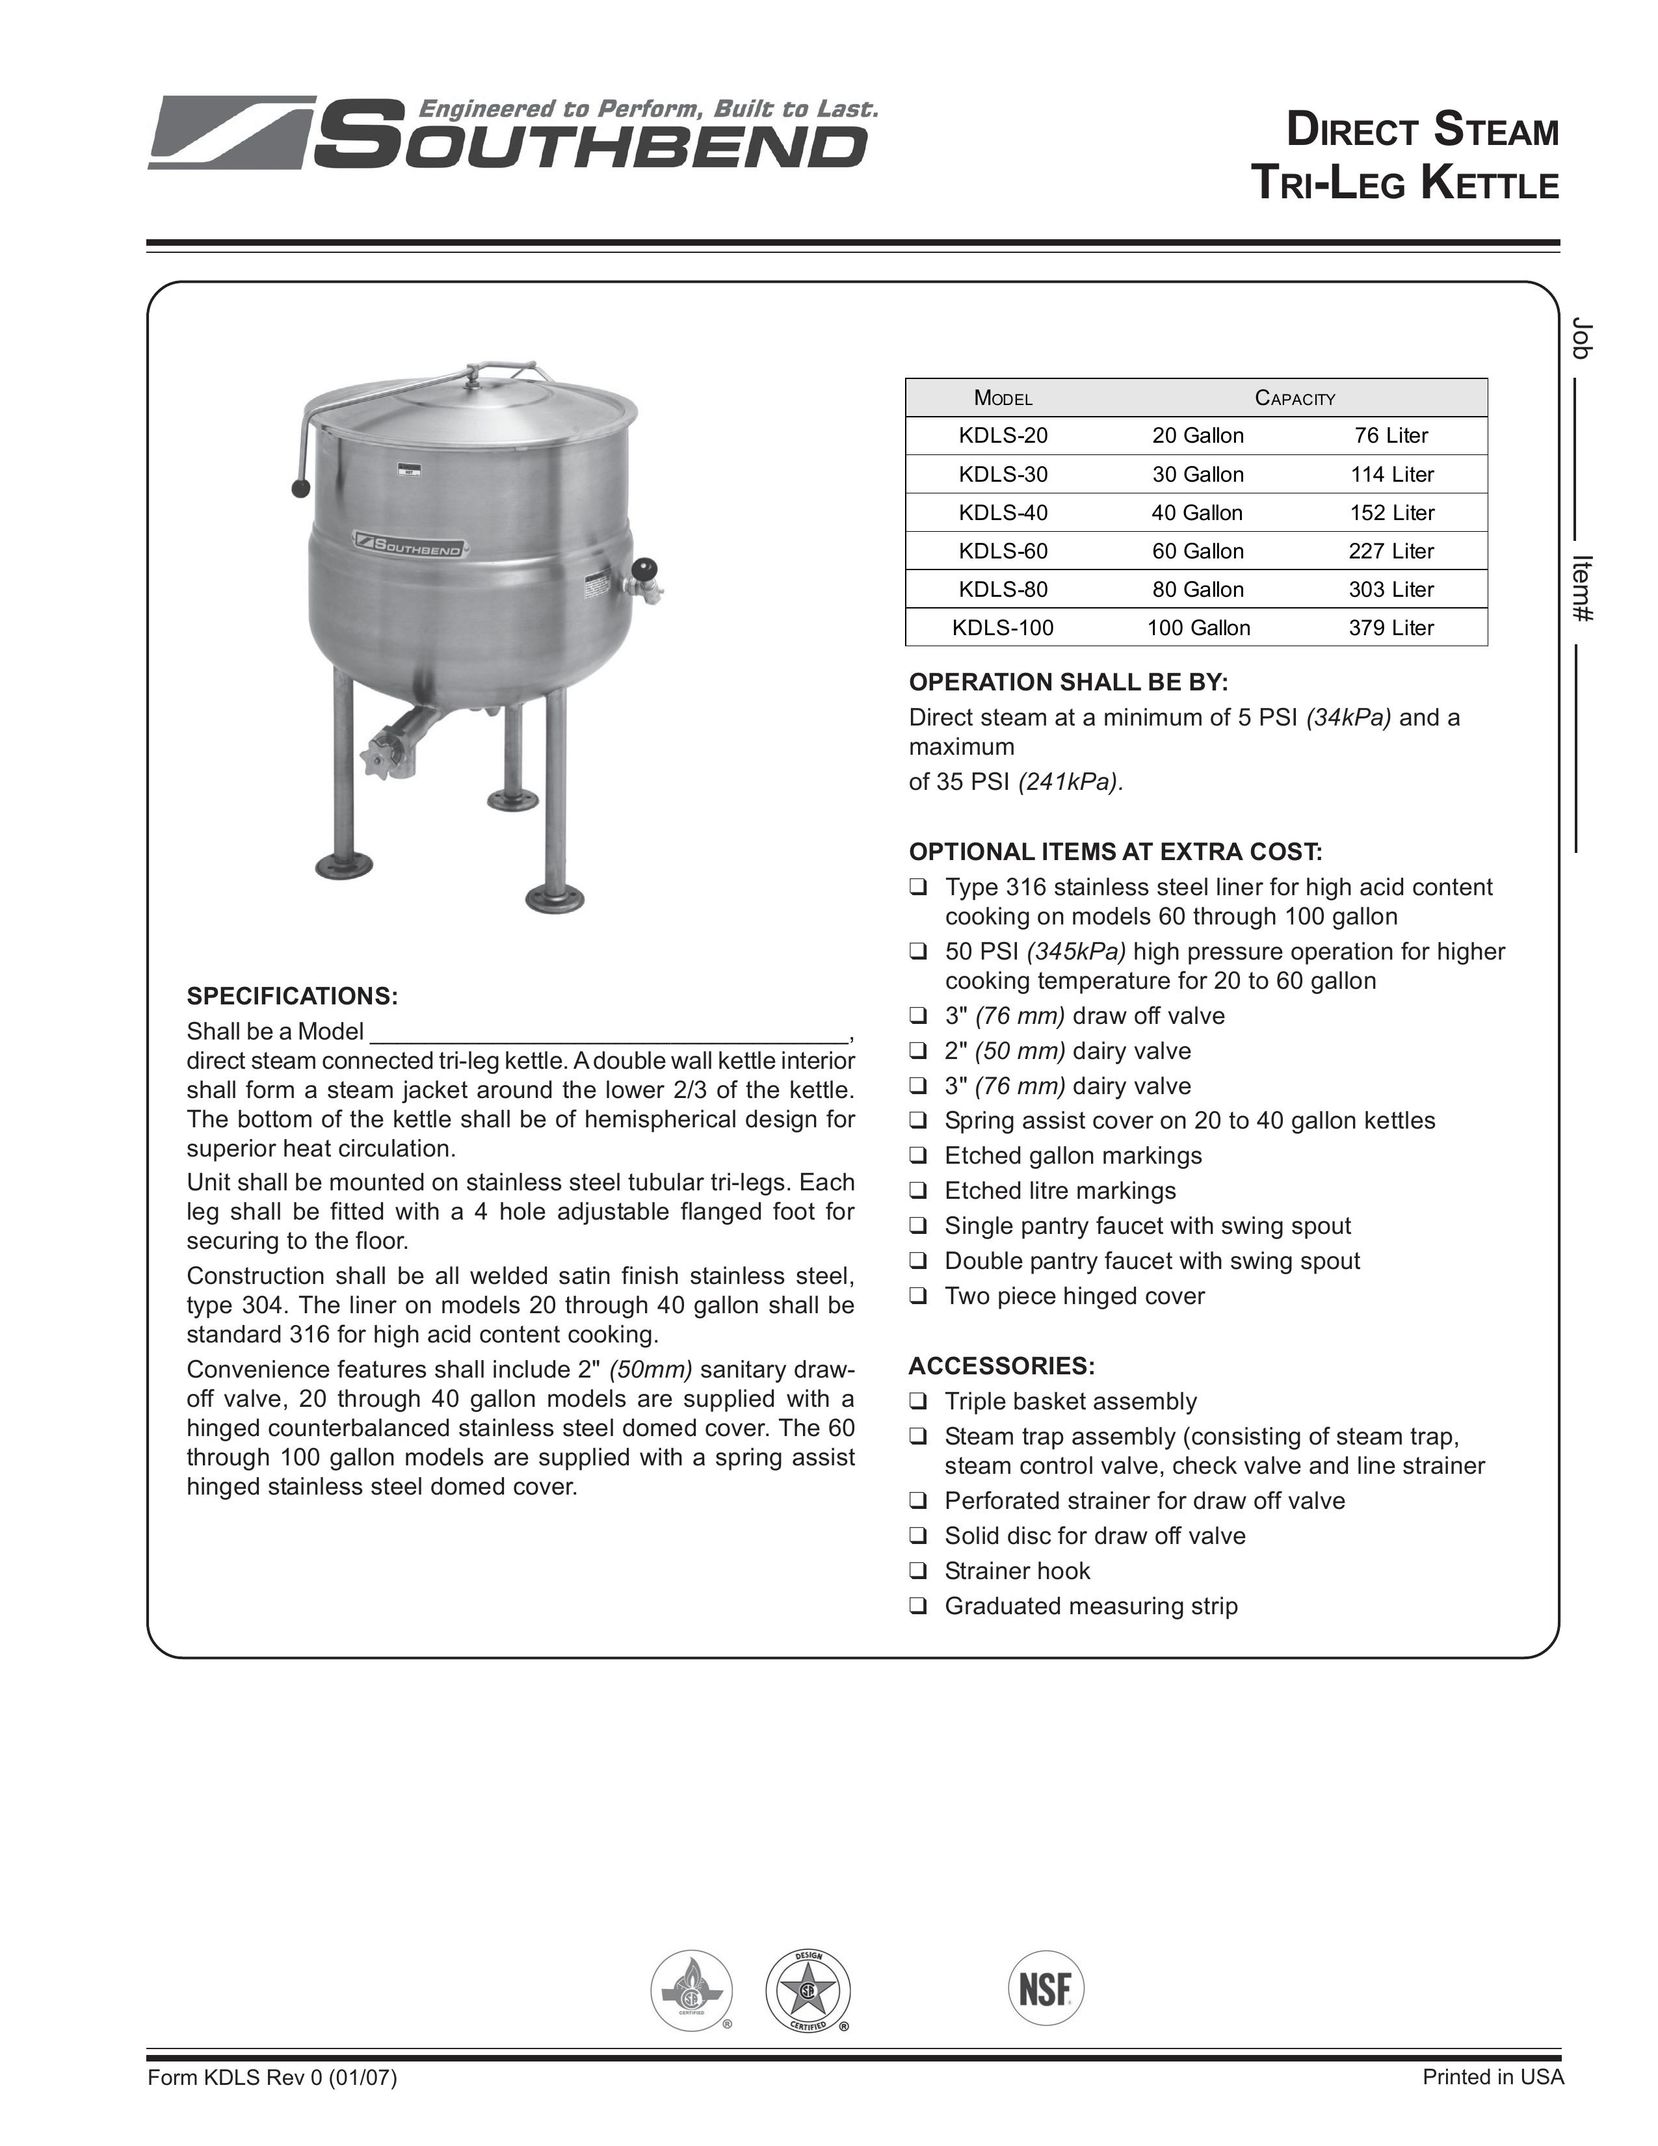 Southbend KDLS-80 Hot Beverage Maker User Manual